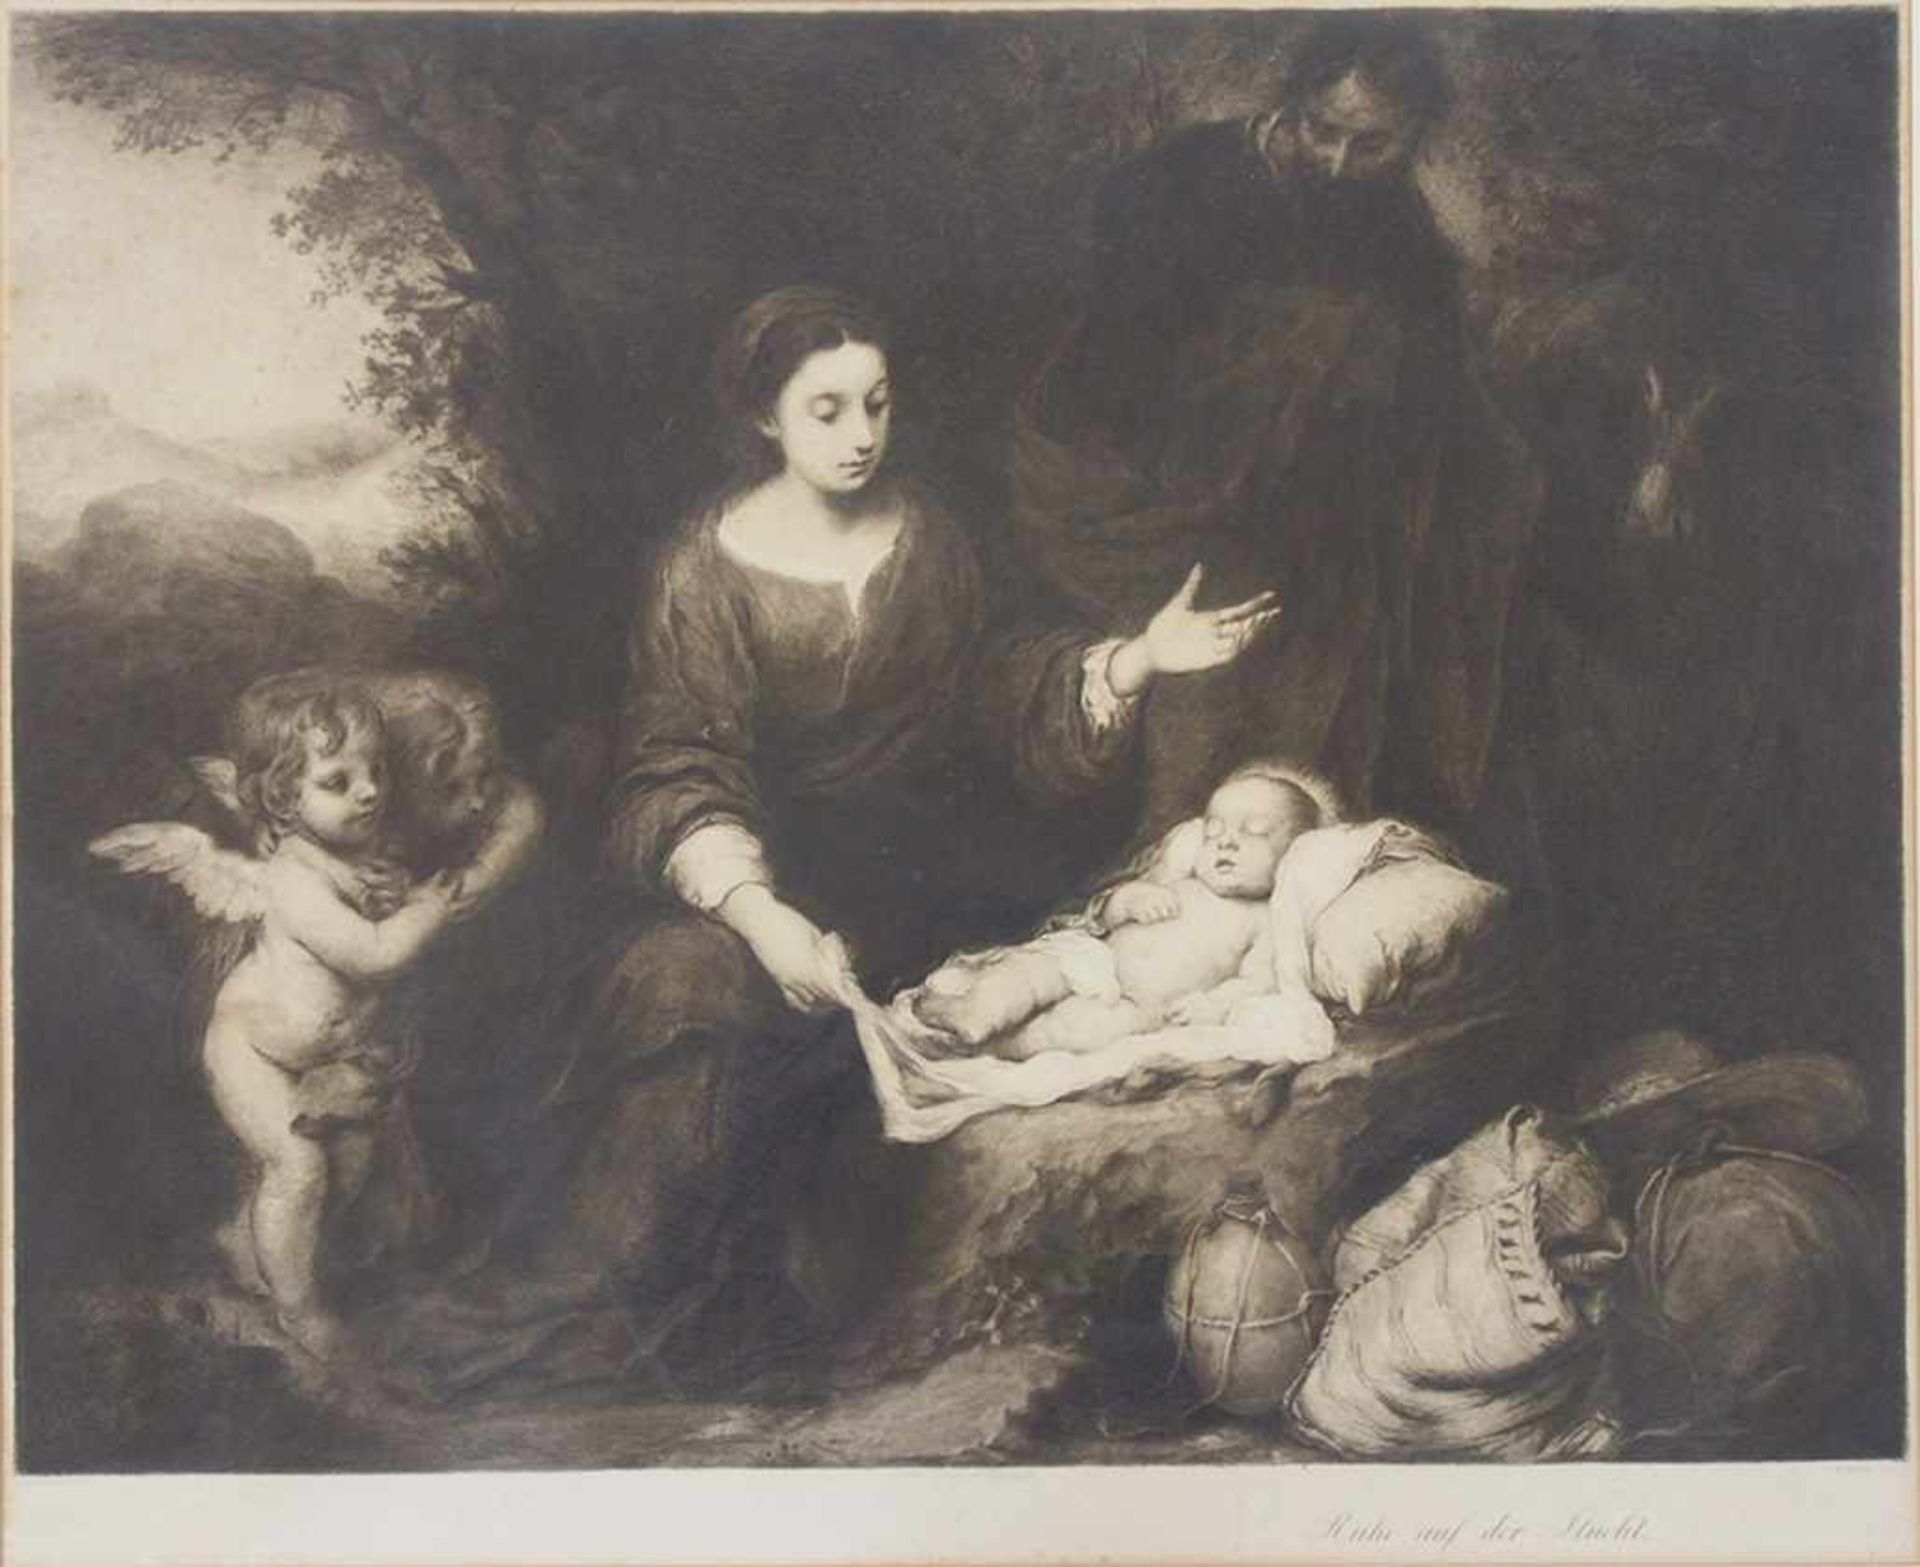 HORTE, Max1865-?Heilige FamilieRadierung, 59 x 73 cm, gerahmt unter Glas und Passepartout (leichte